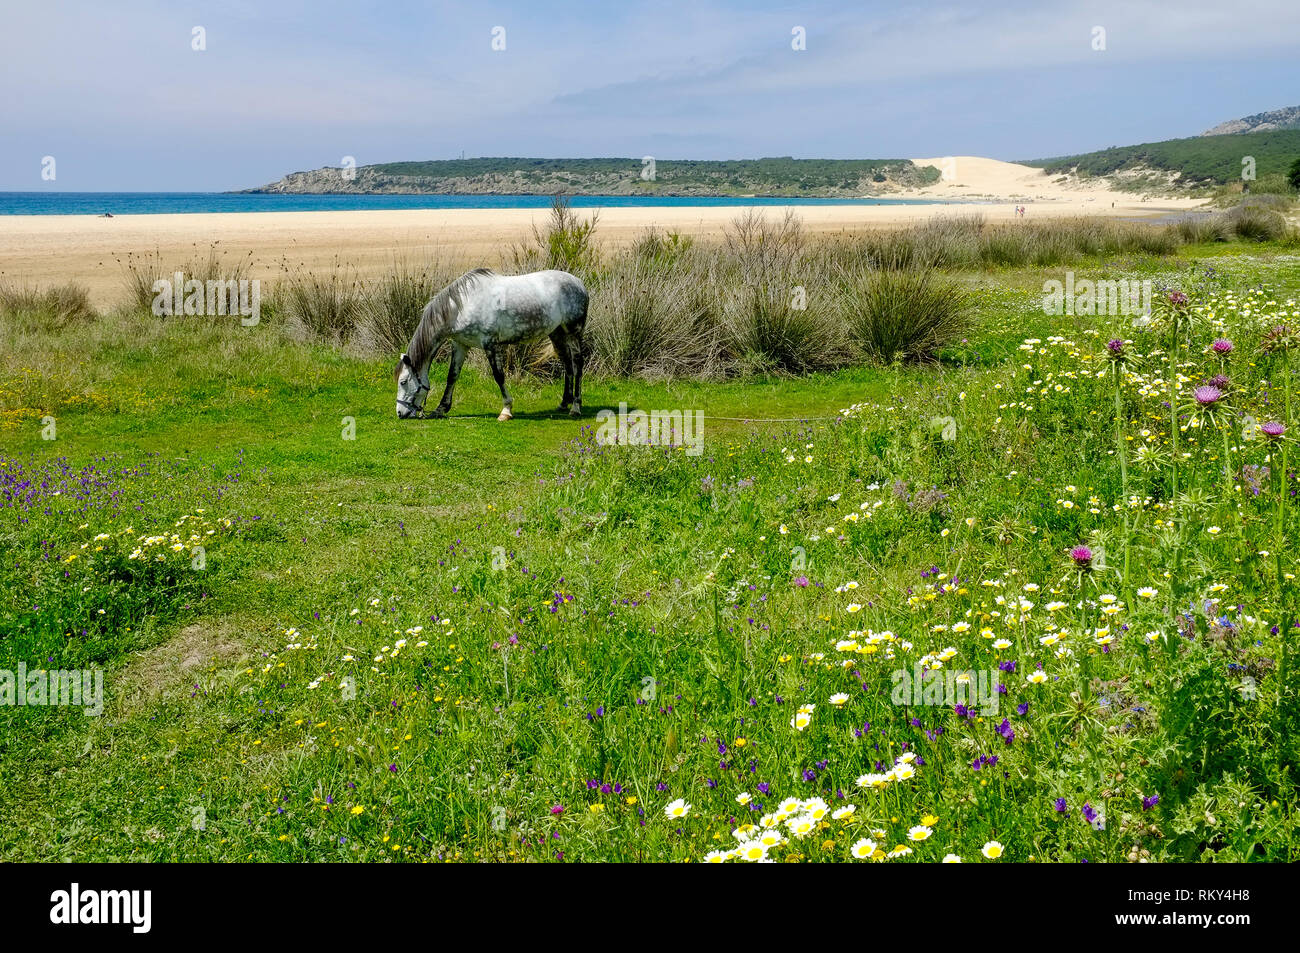 Un caballo pastando en un prado de flores silvestres, junto a la desierta playa y dunas de arena en la Bahía de Bolonia, Costa de la Luz, Andalucía, España. Foto de stock